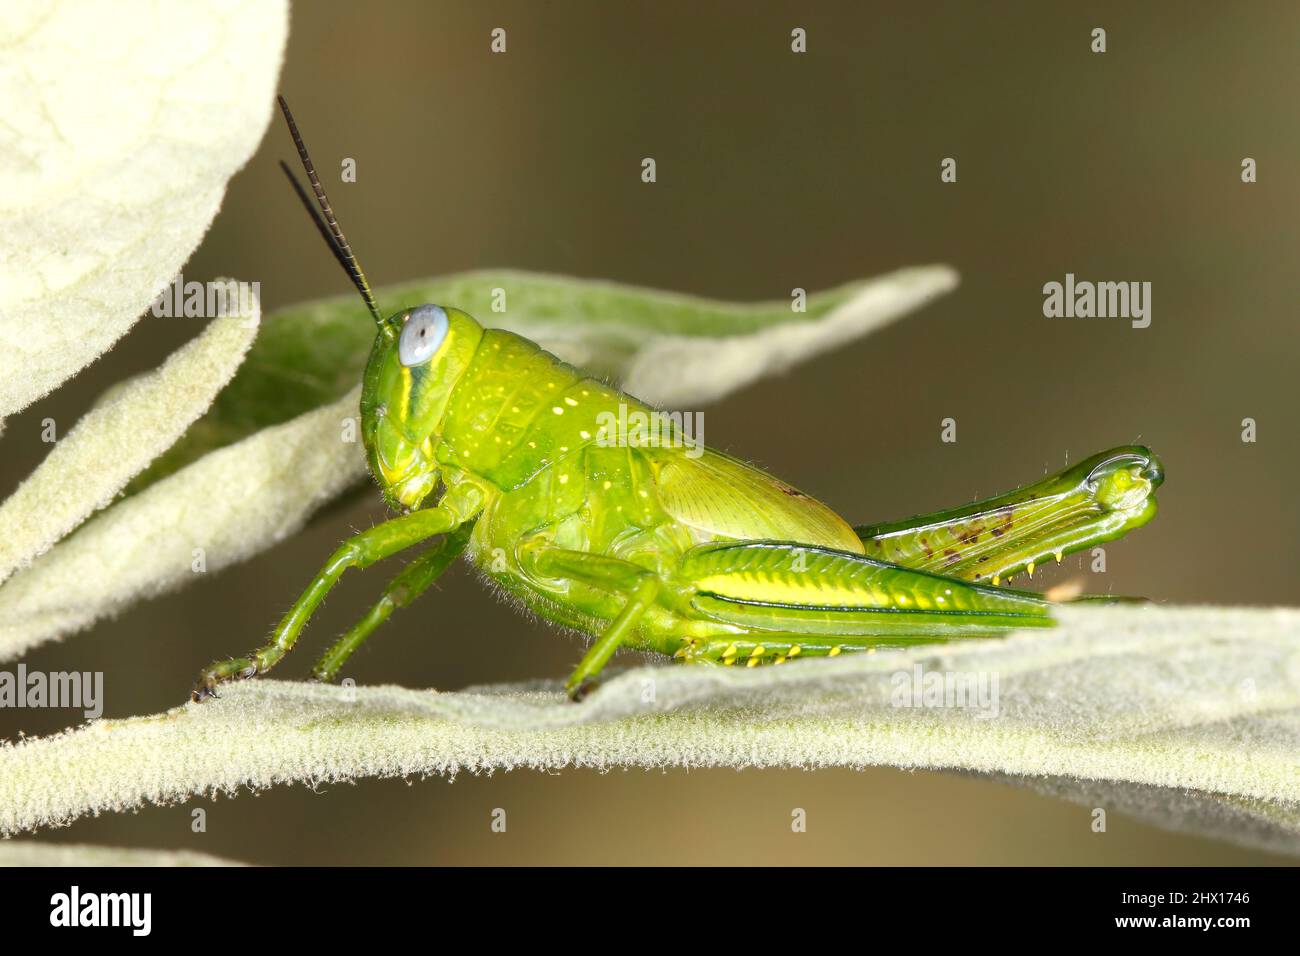 Riesige Grasshopper, Valanga irregularis. Auch bekannt als Giant Valanga oder Hedge Grasshopper. Leuchtend grüne letzte Instarnymphe. Coffs Harbour, NSW, Australien Stockfoto